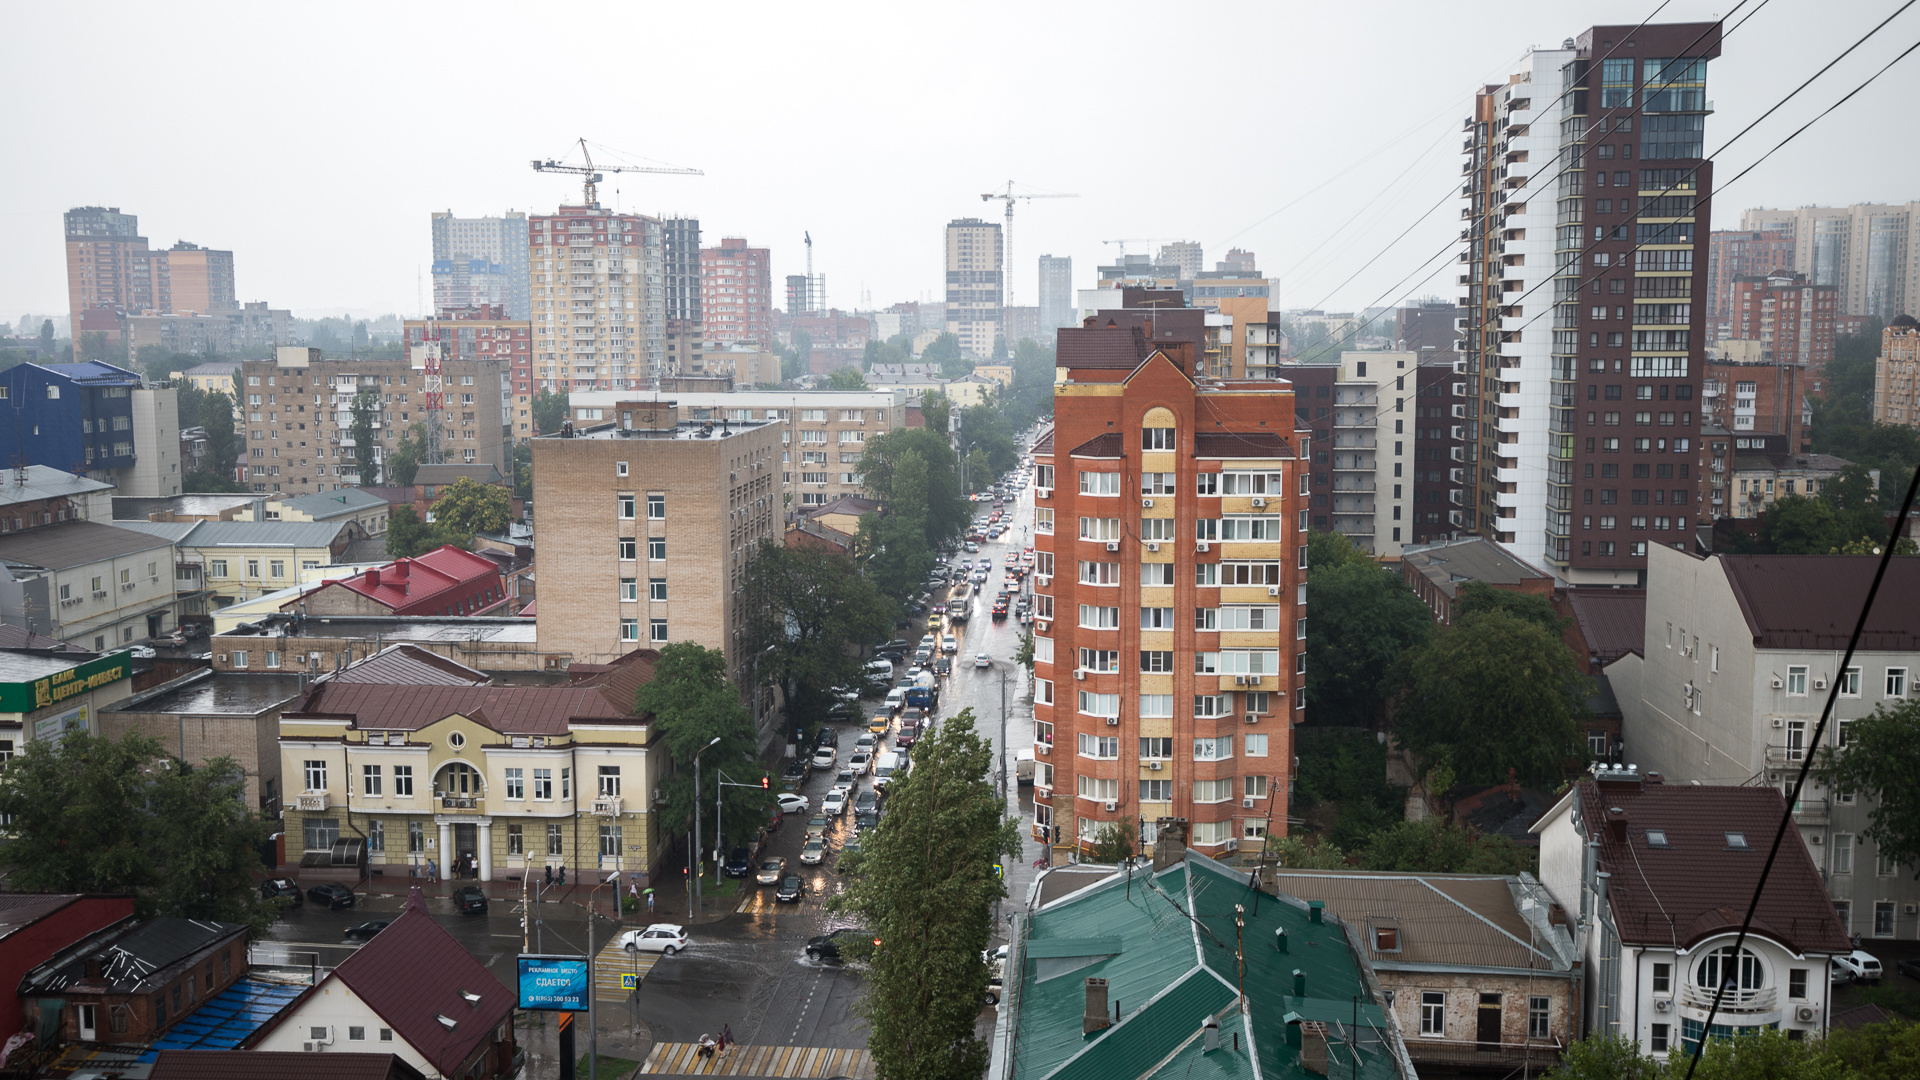 Аналитик заявил, что покупать квартиры в Ростове выгоднее, чем в Краснодаре или Сочи. Почему?